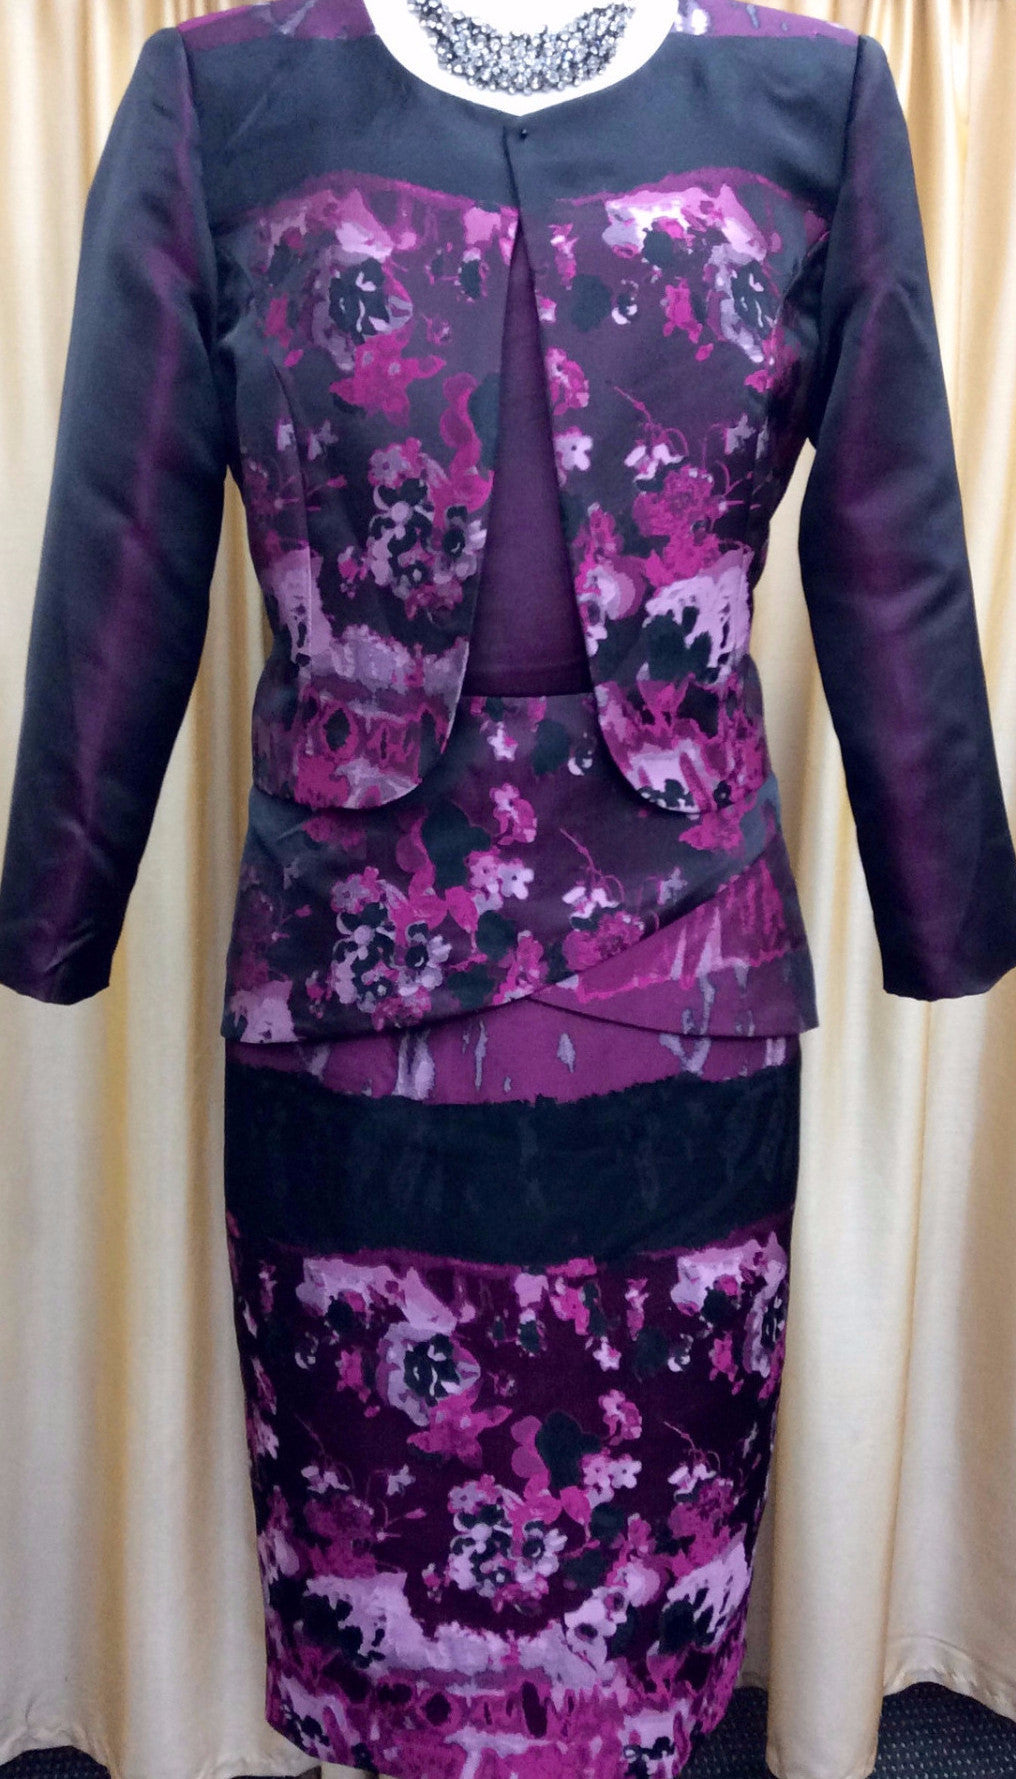 2. Dress and Jacket Sets - Isabella Fashions